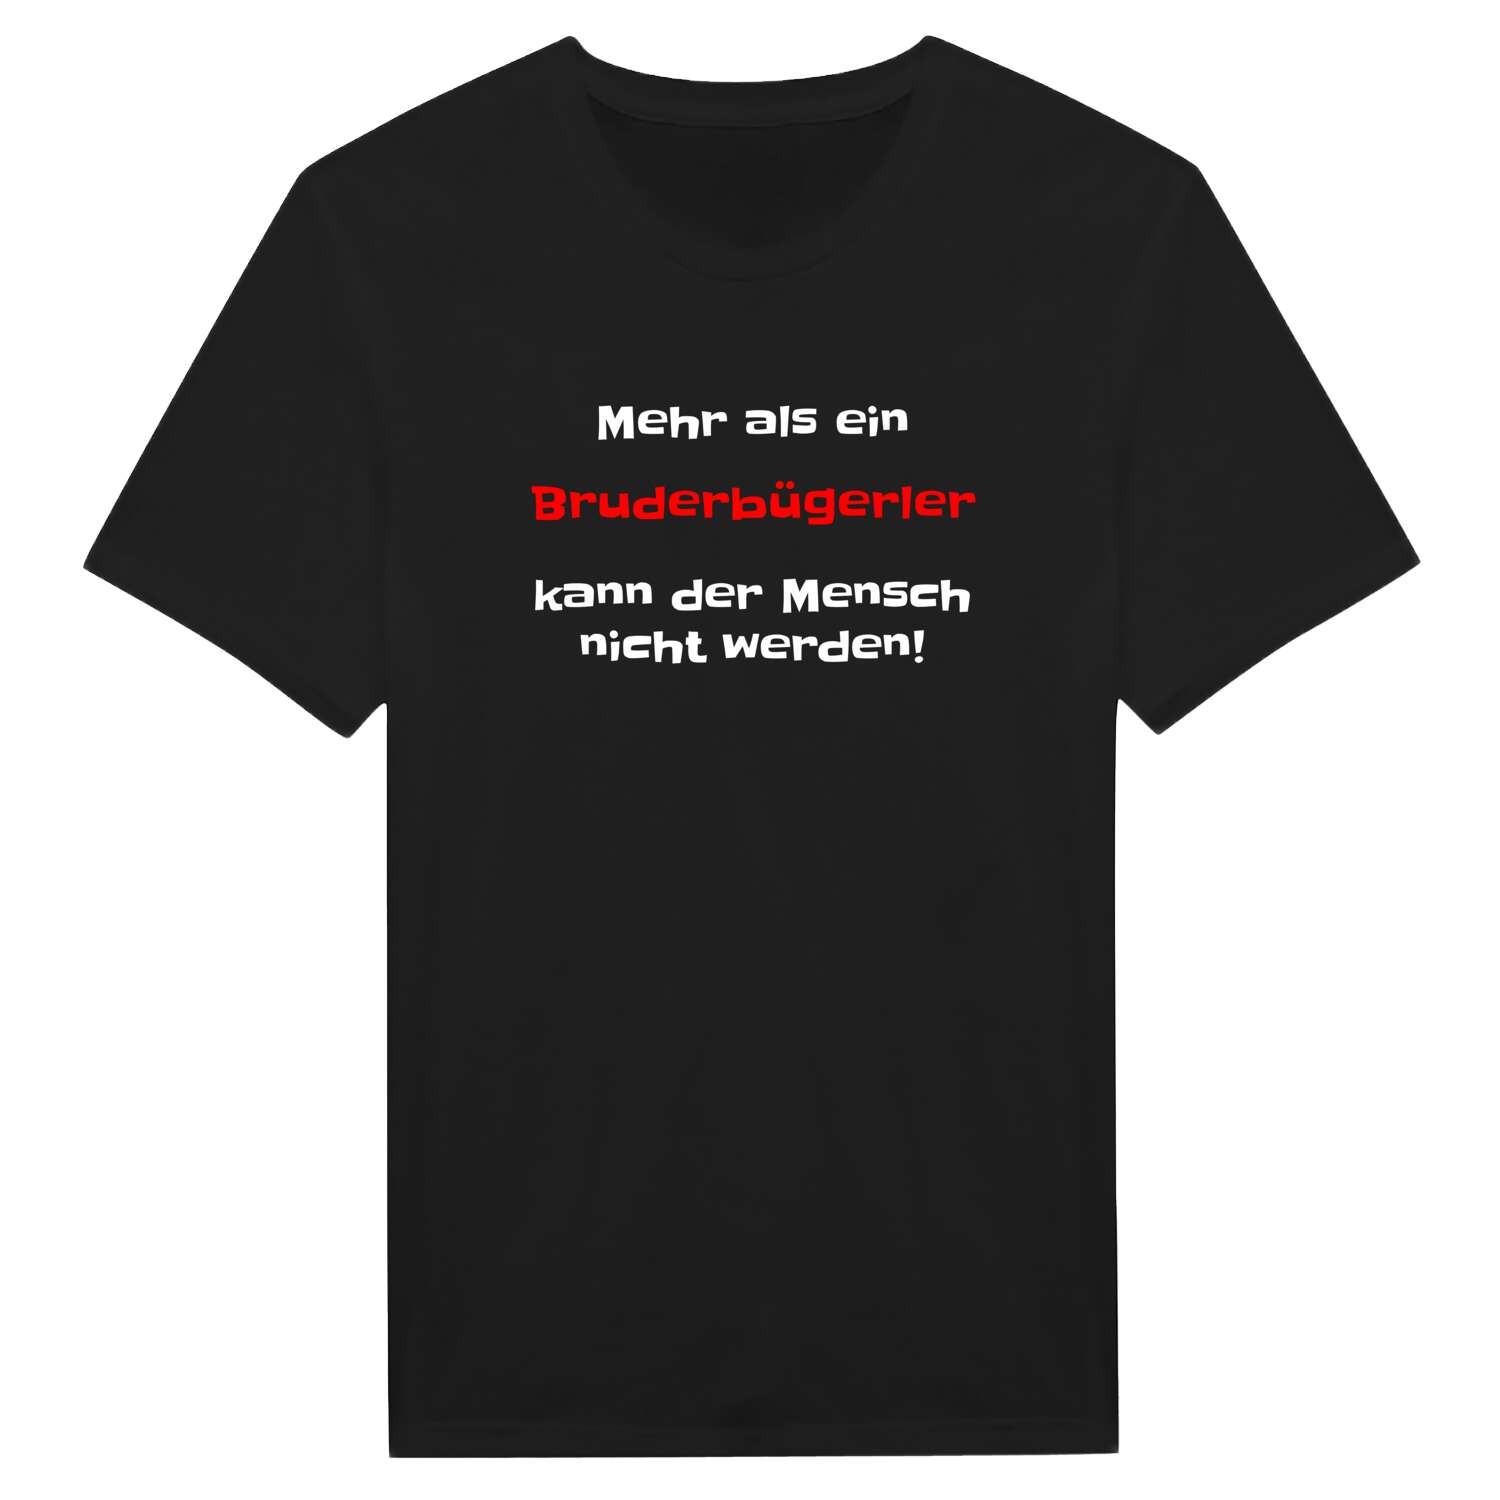 Bruderbügerl T-Shirt »Mehr als ein«